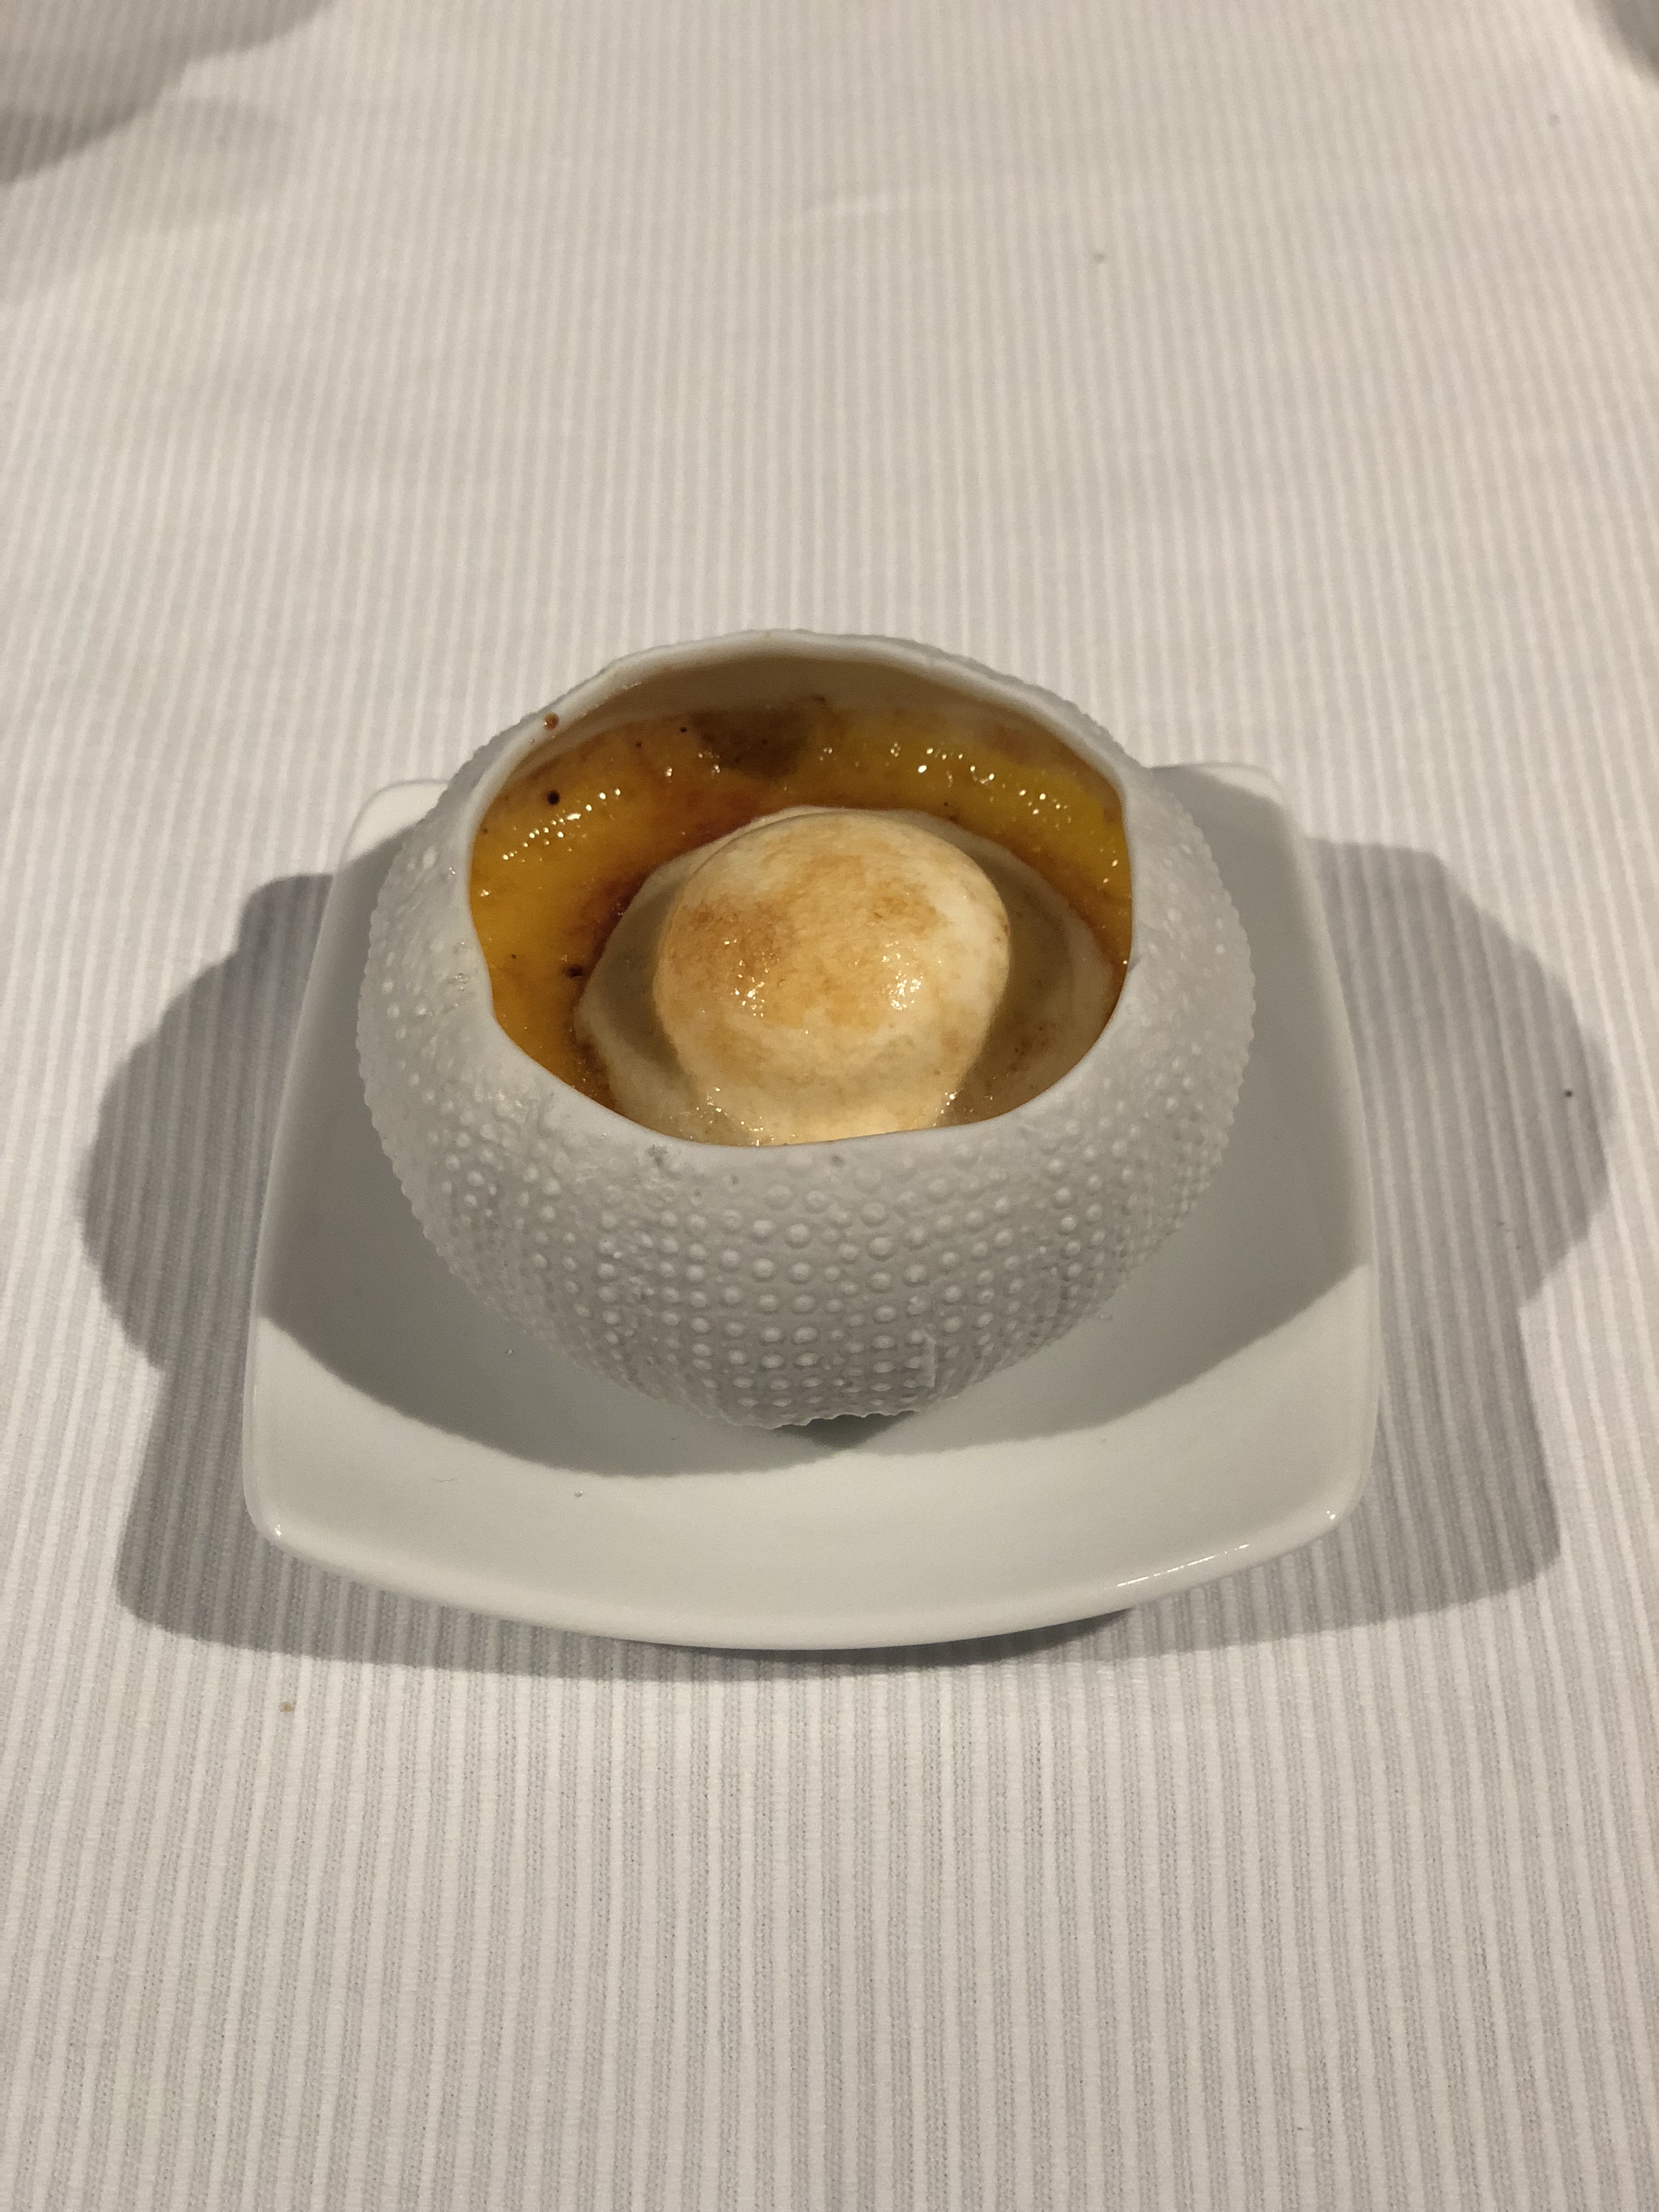 Creme brulee dessert in a sea urchin ceramic bowl